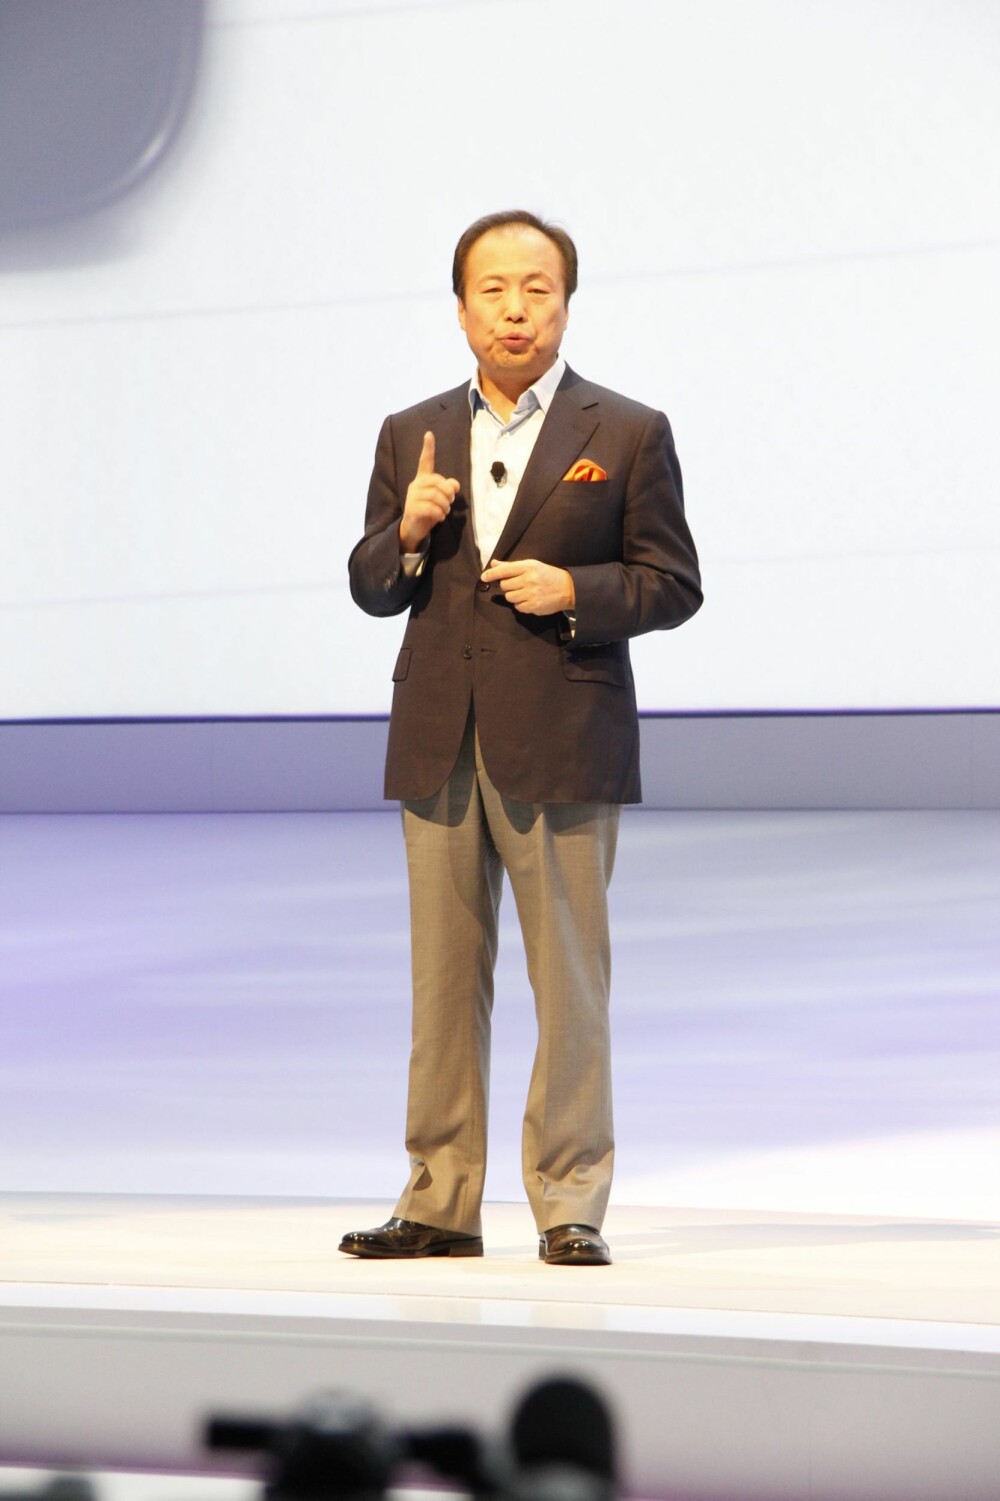 STOLT: Sjefen for IT og Mobile Division i Samsung, JK Shin, kunne vise frem en splitter ny og oppdatert utgave av gigantmobilen Galaxy Note.